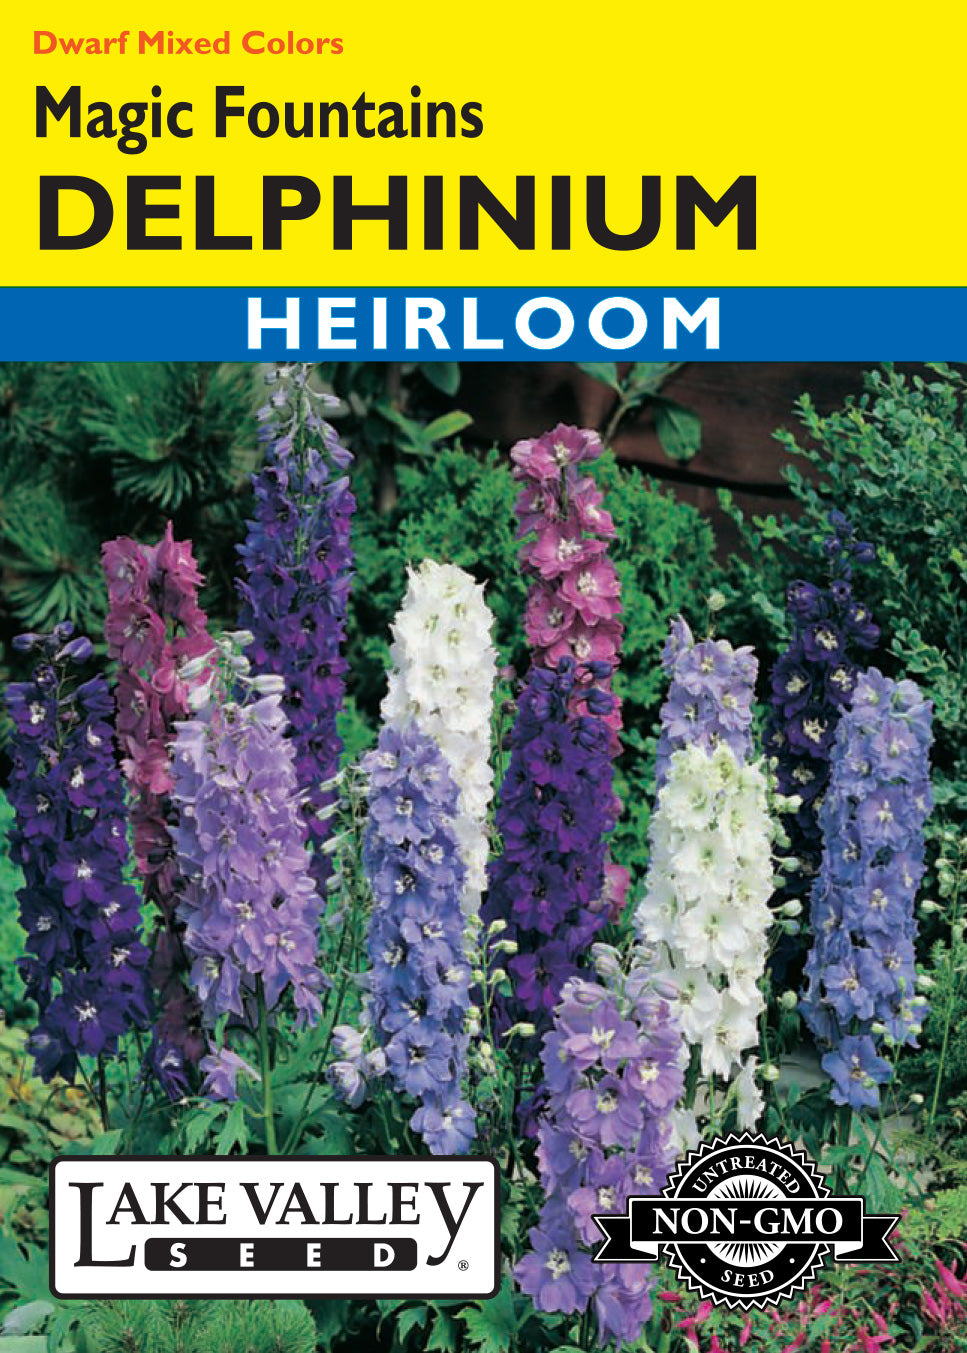 Delphinium